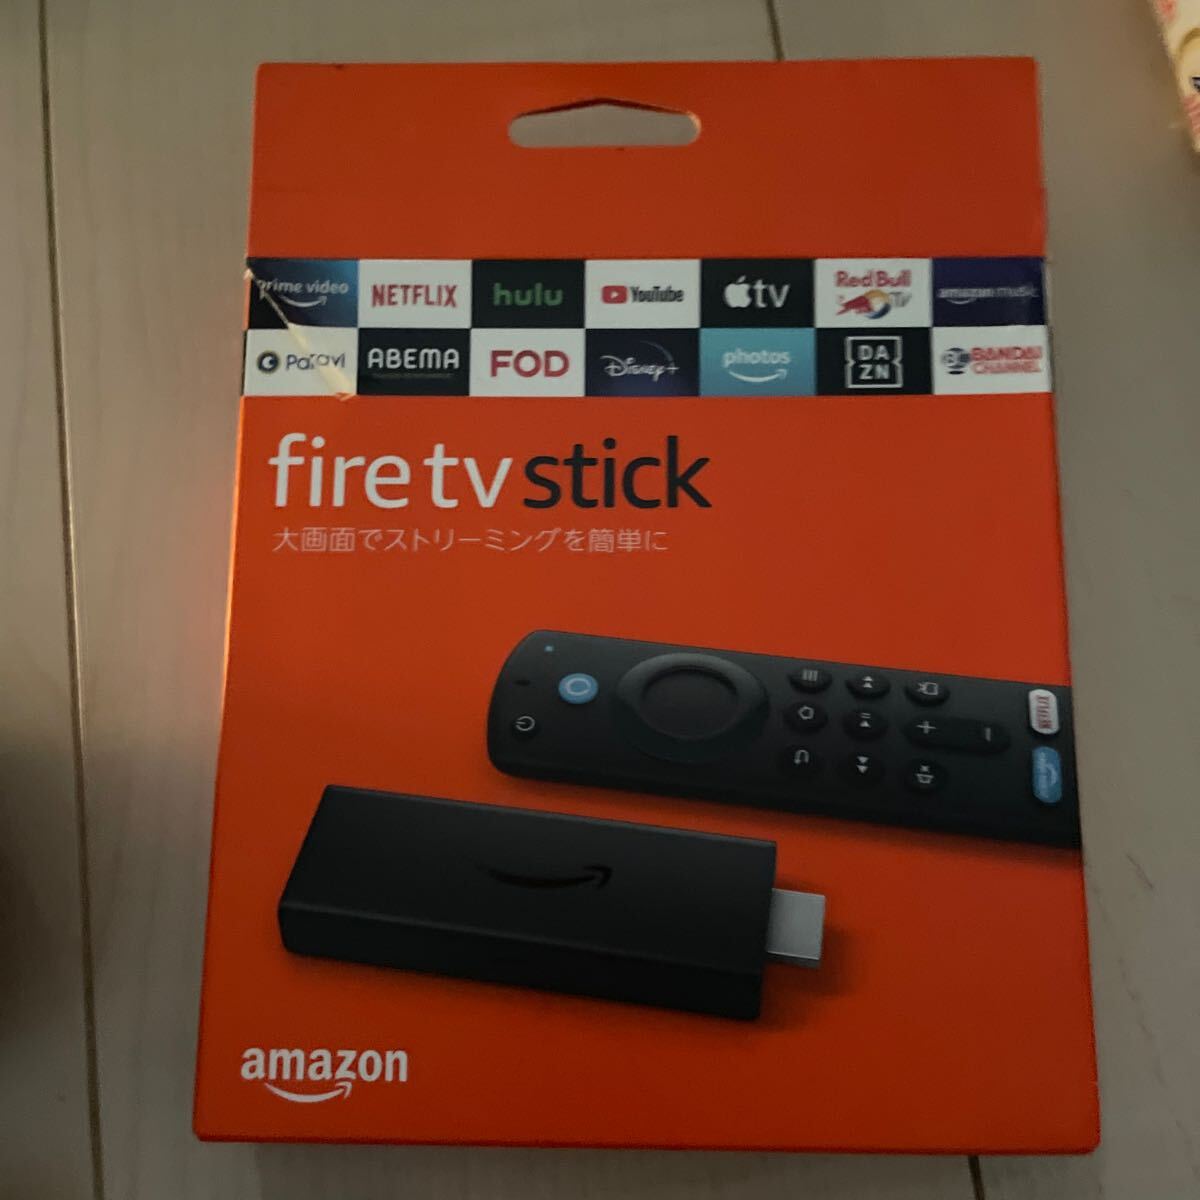 Amazon fire - stick AMAZON Echo Spot